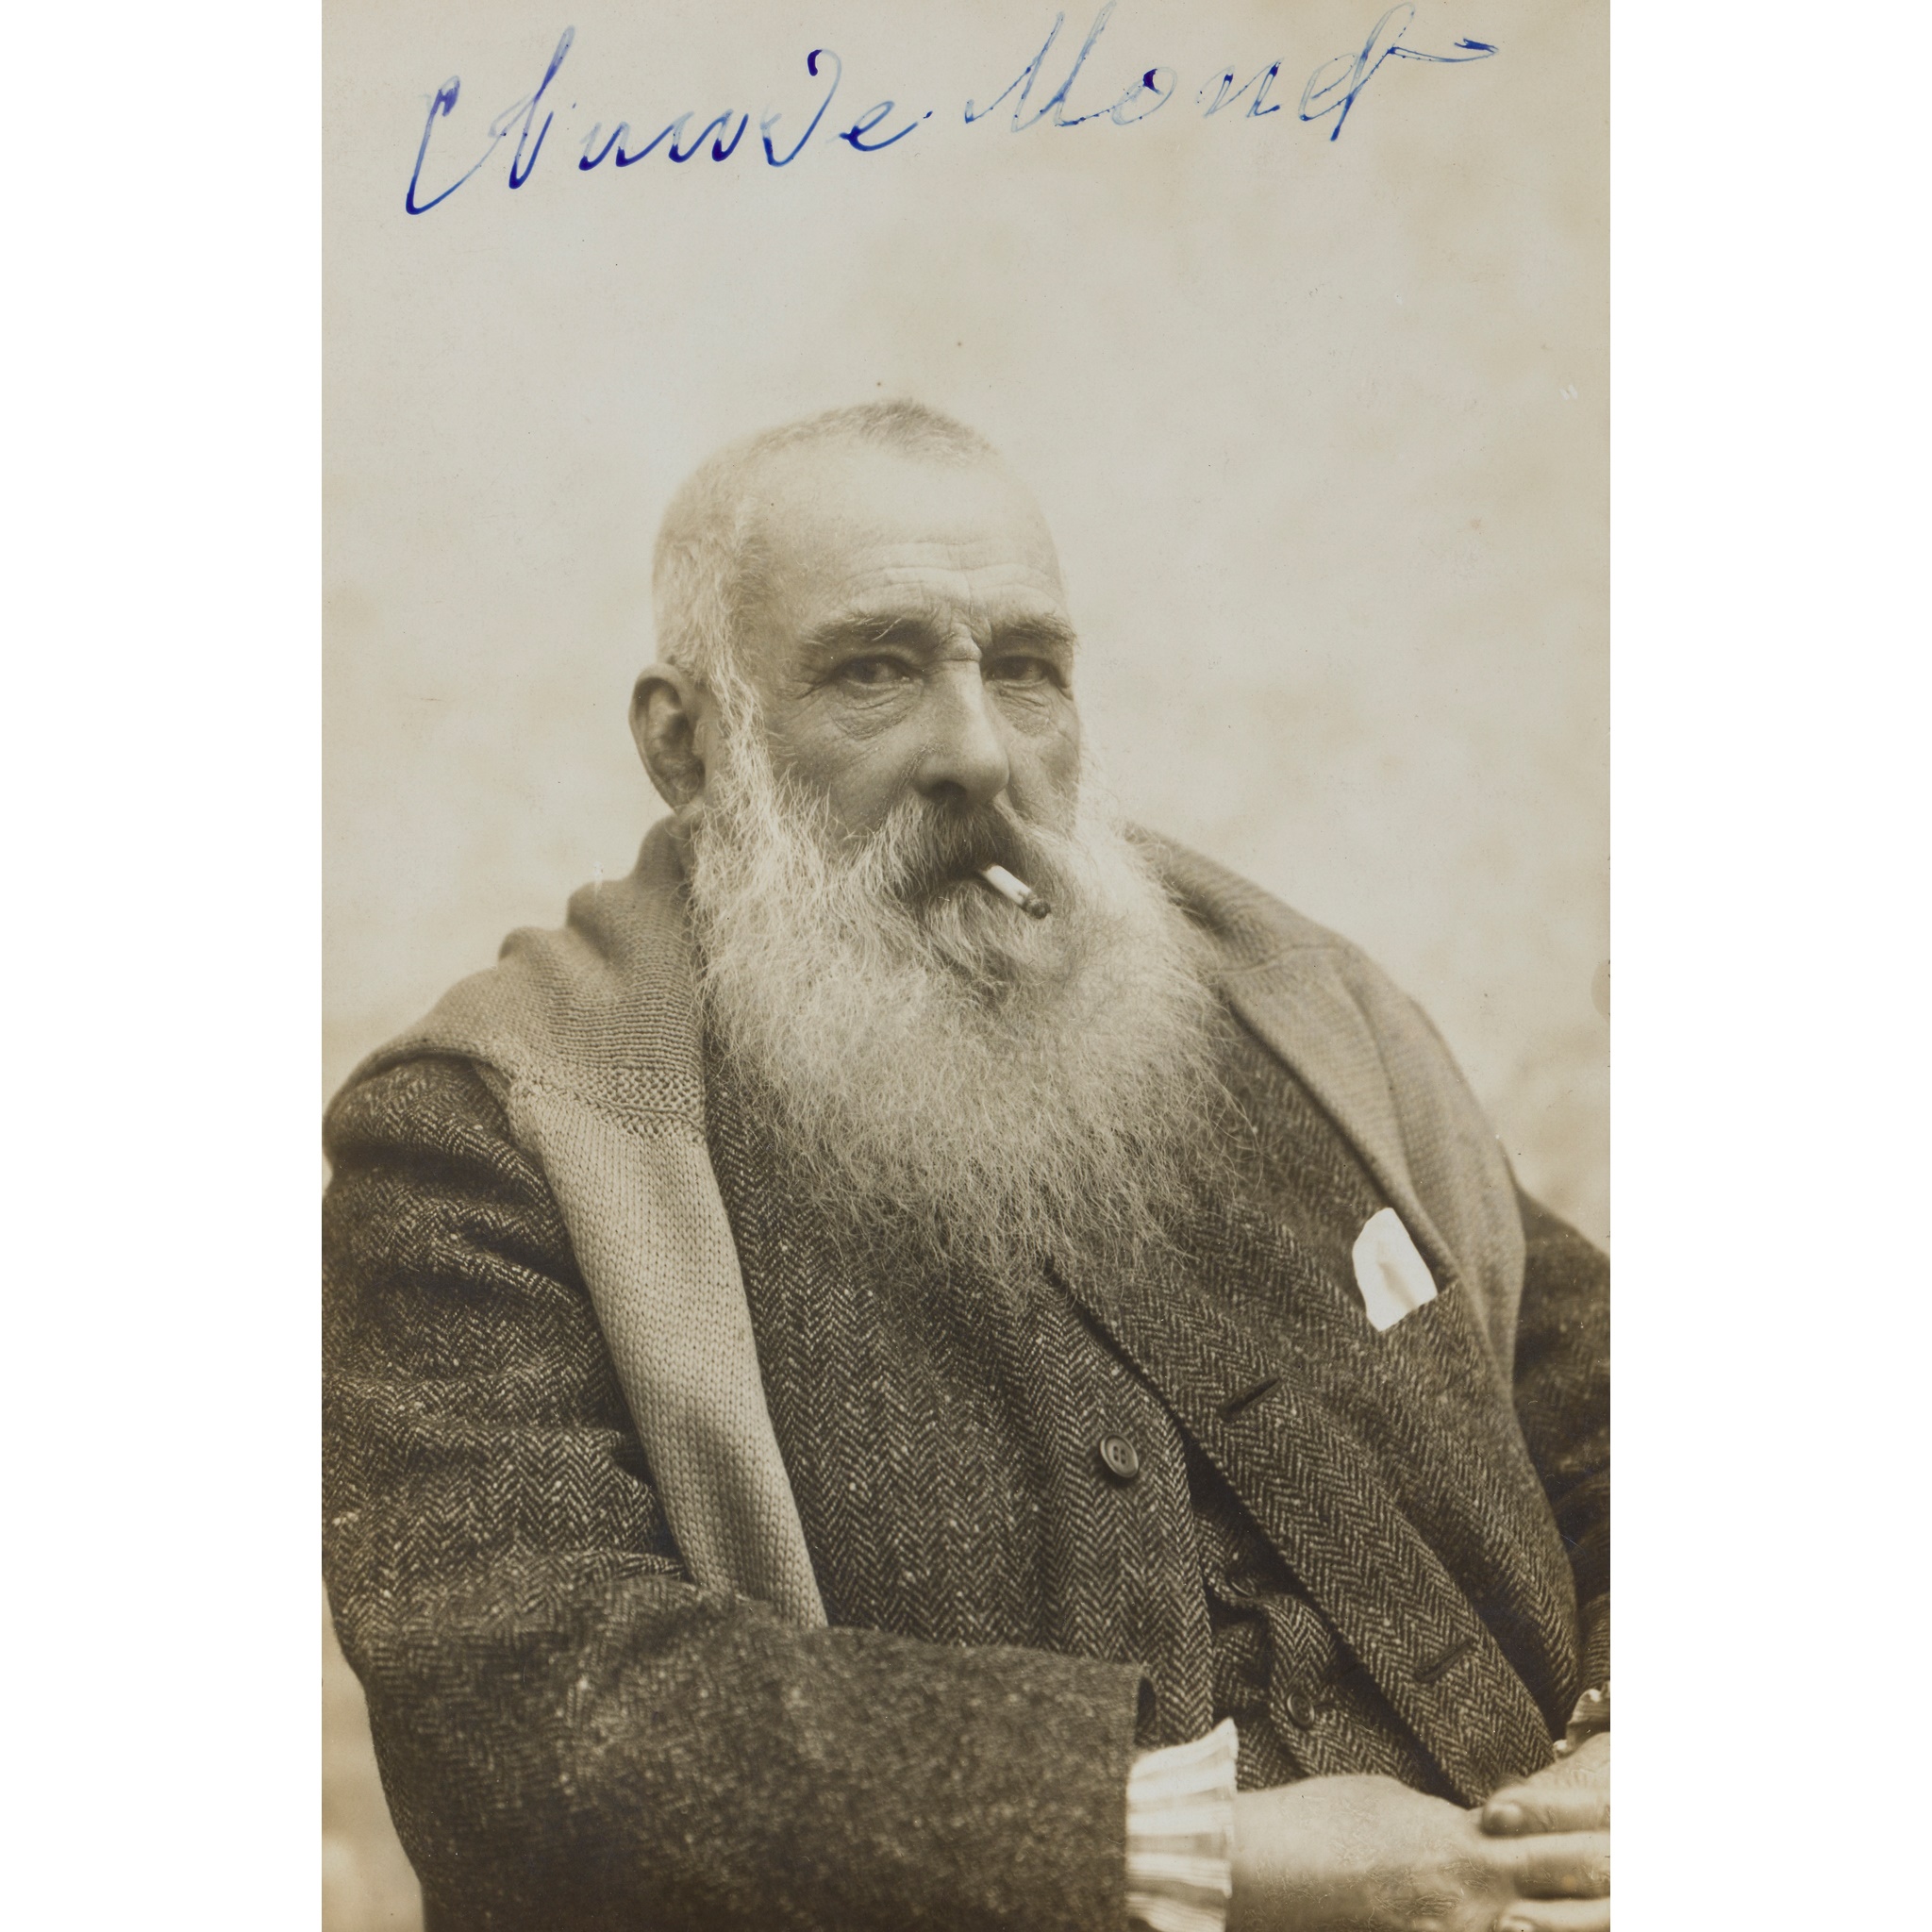 Monet, Claude signed photograph